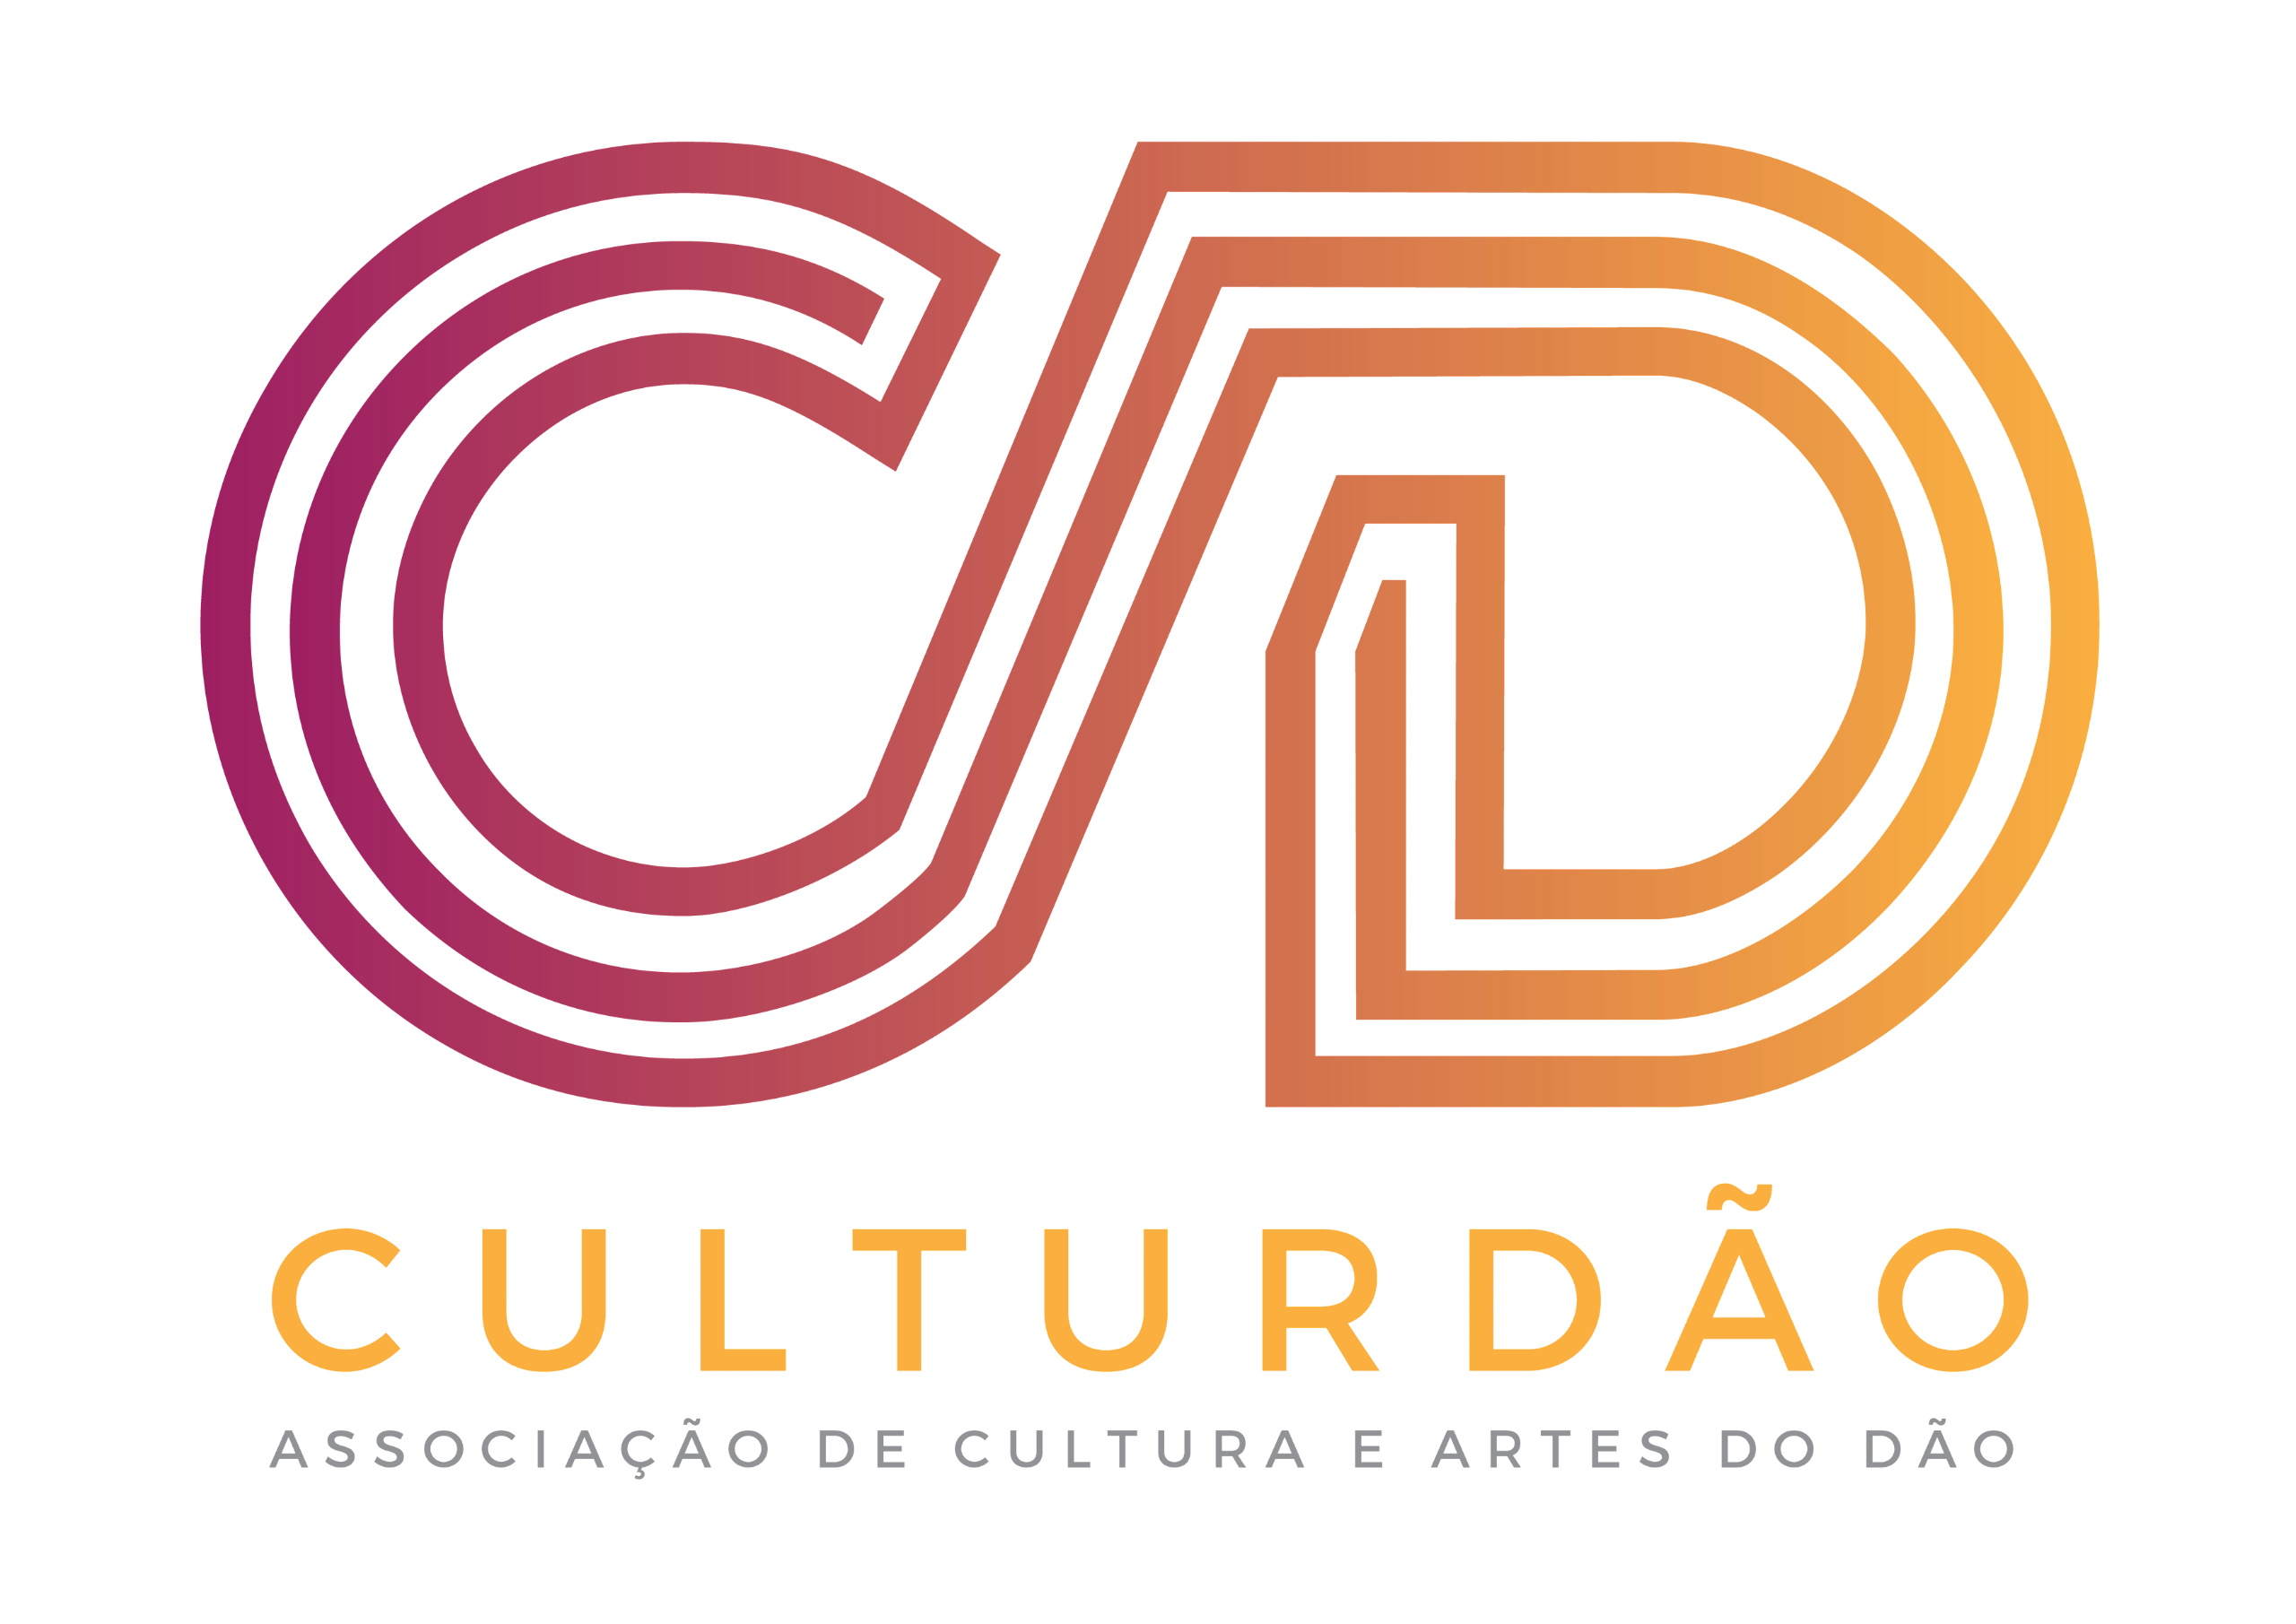 CulturDão - Associação de Cultura e Artes do Dão